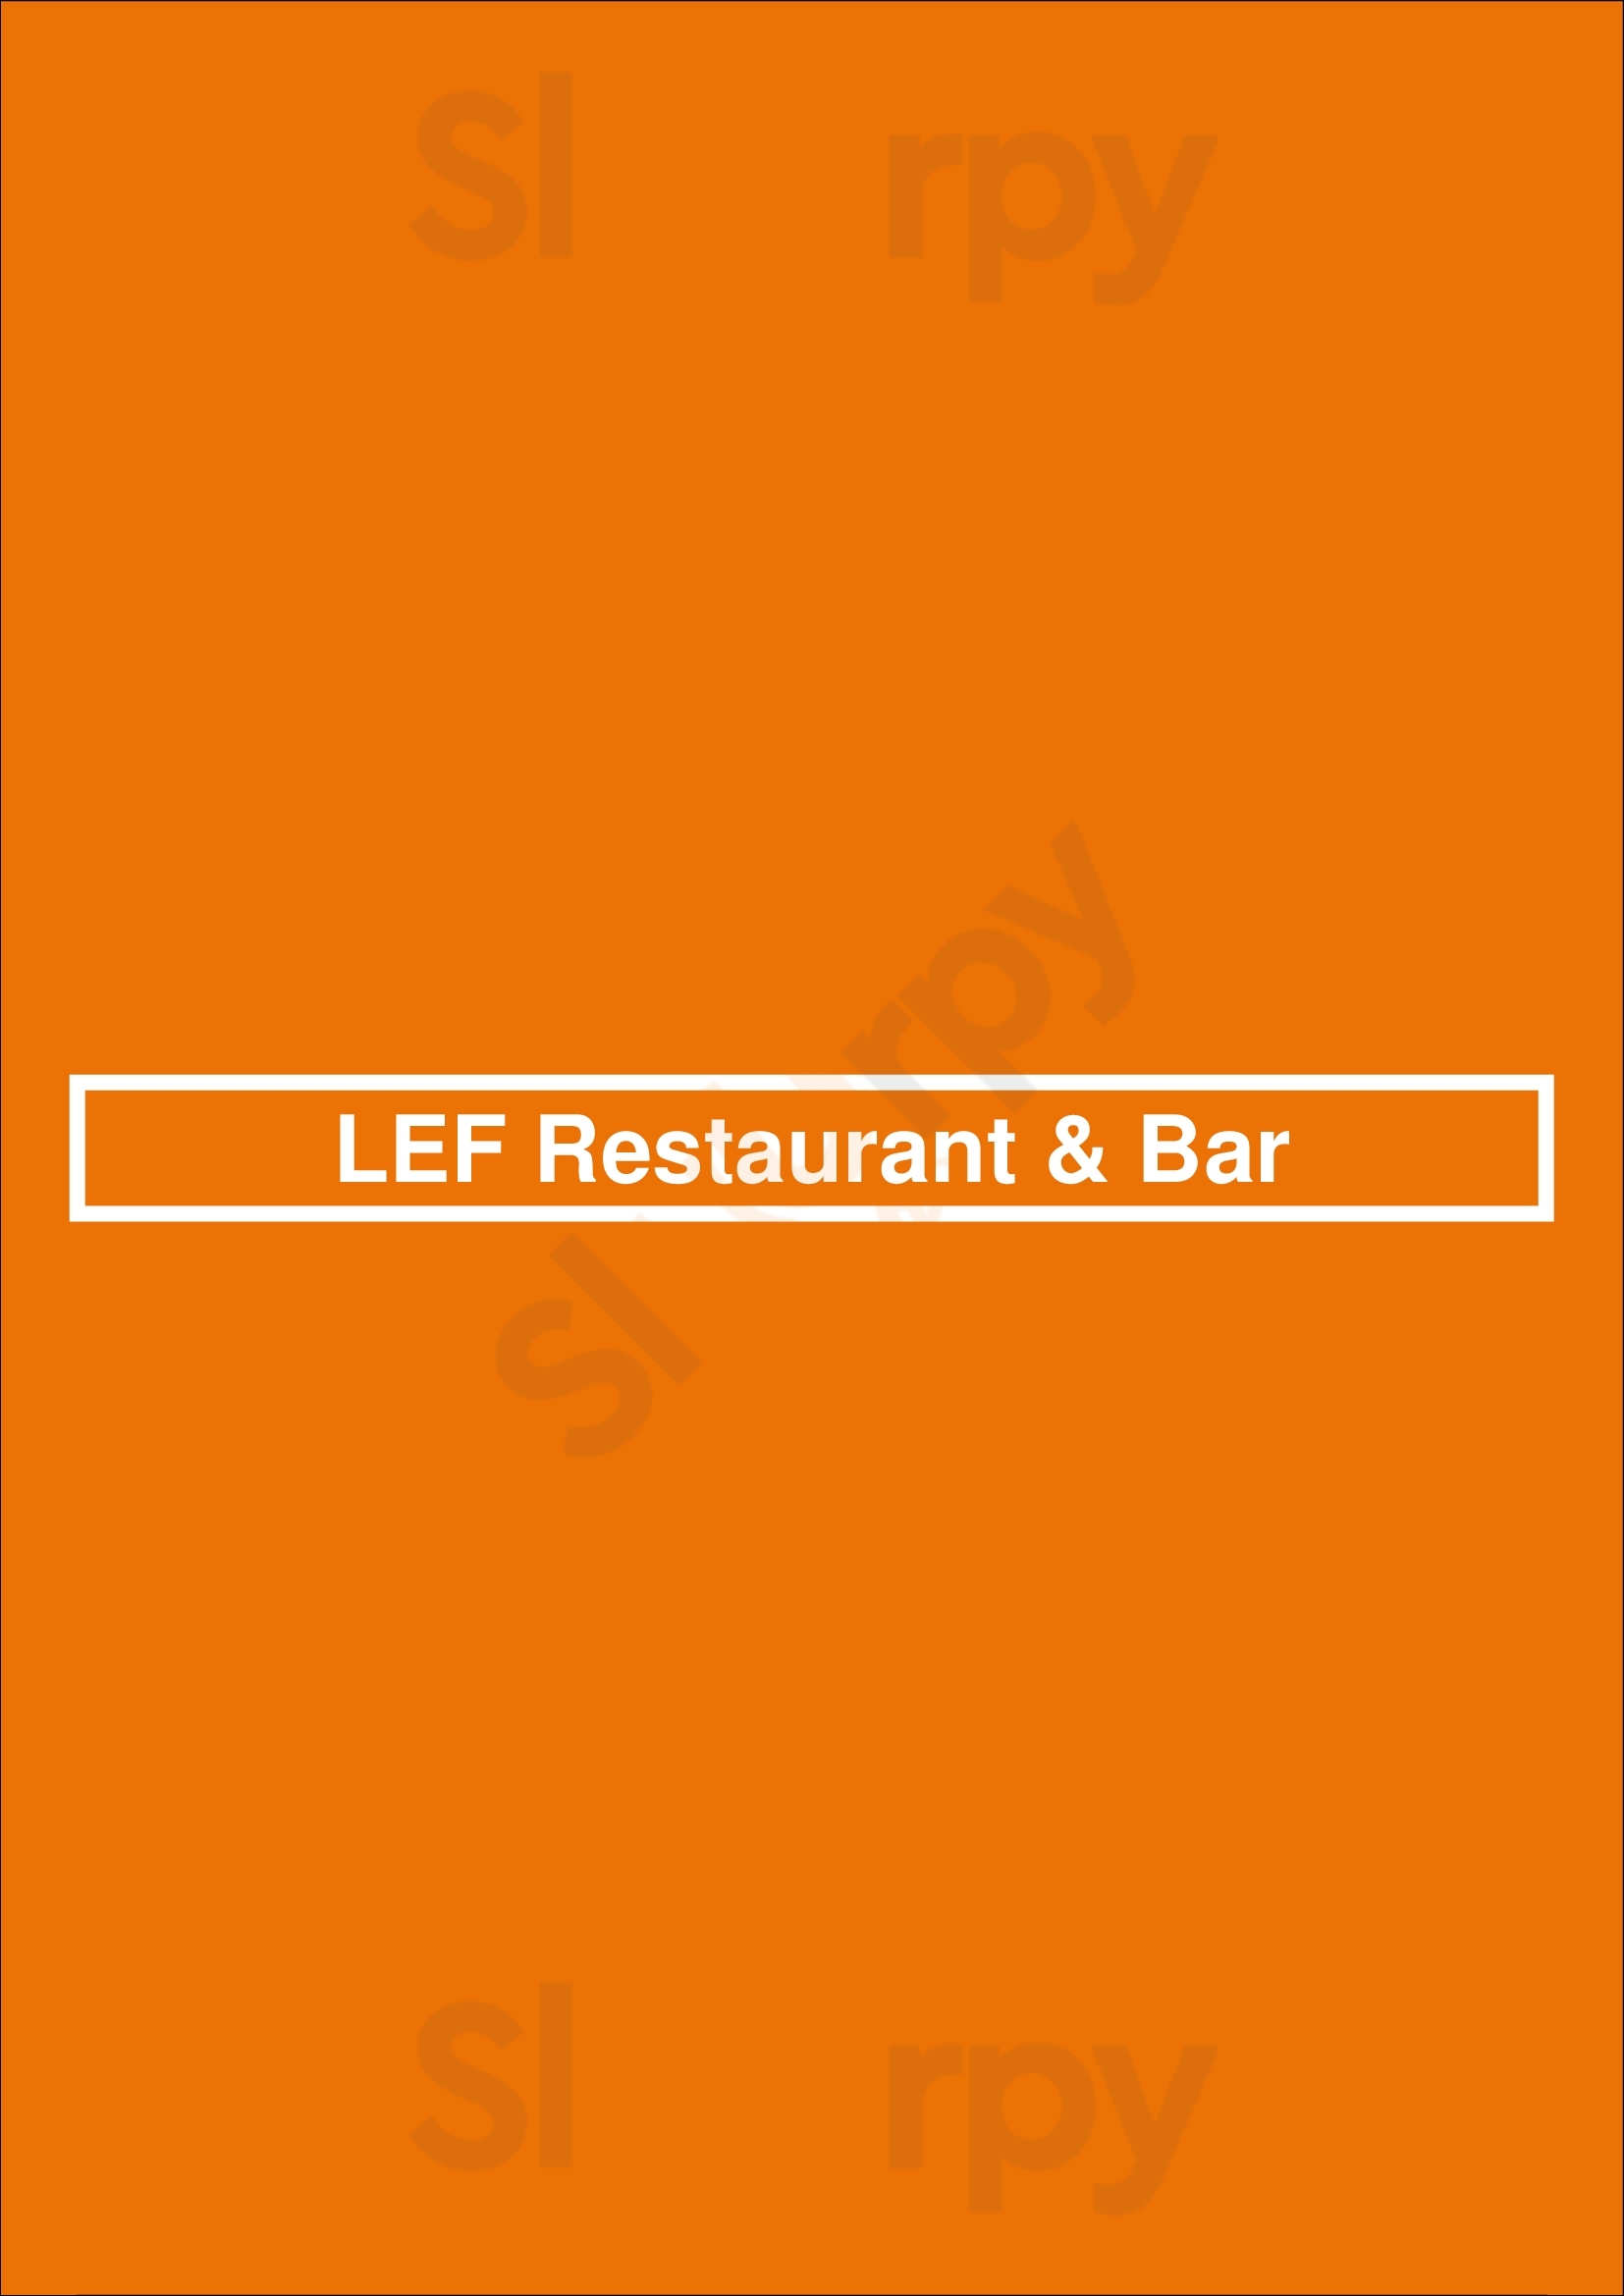 Lef Restaurant & Bar Delft Menu - 1